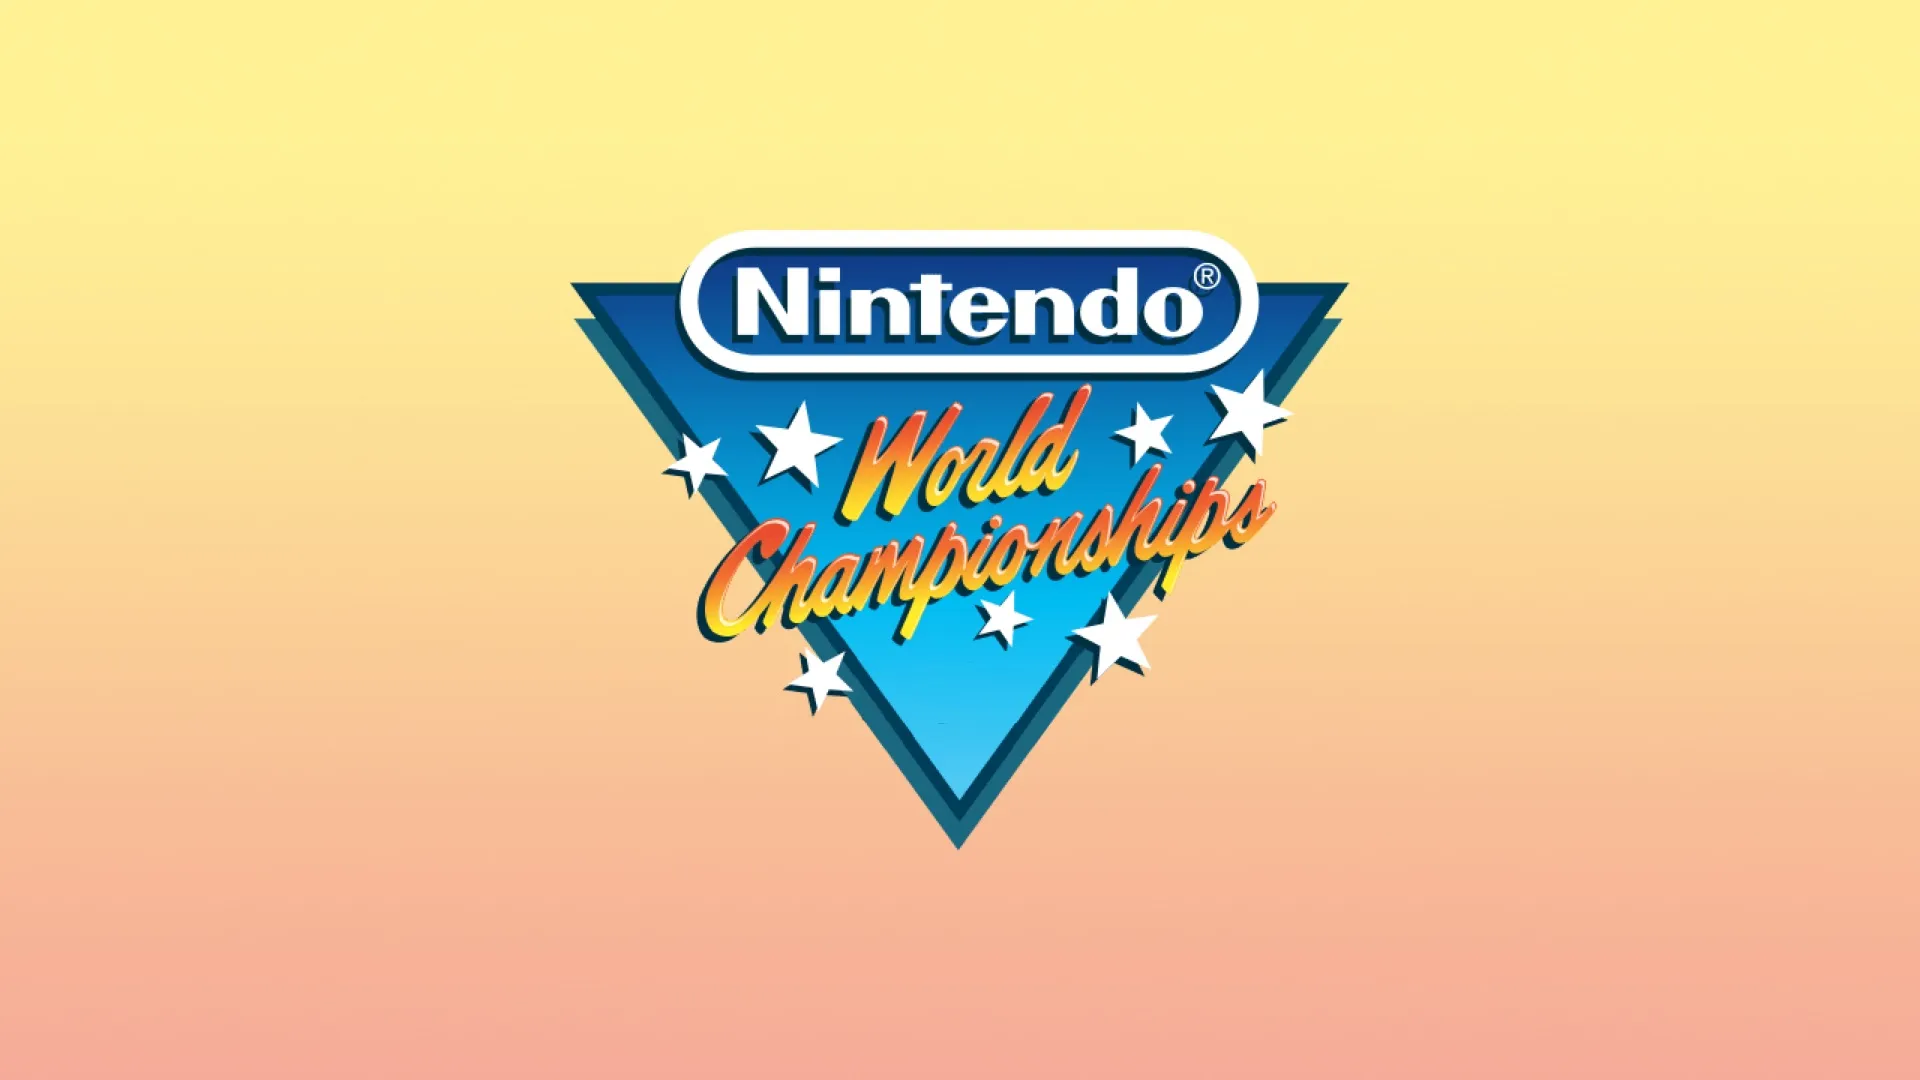 Le grand retour des Nintendo World Championships avec un nouveau jeu
